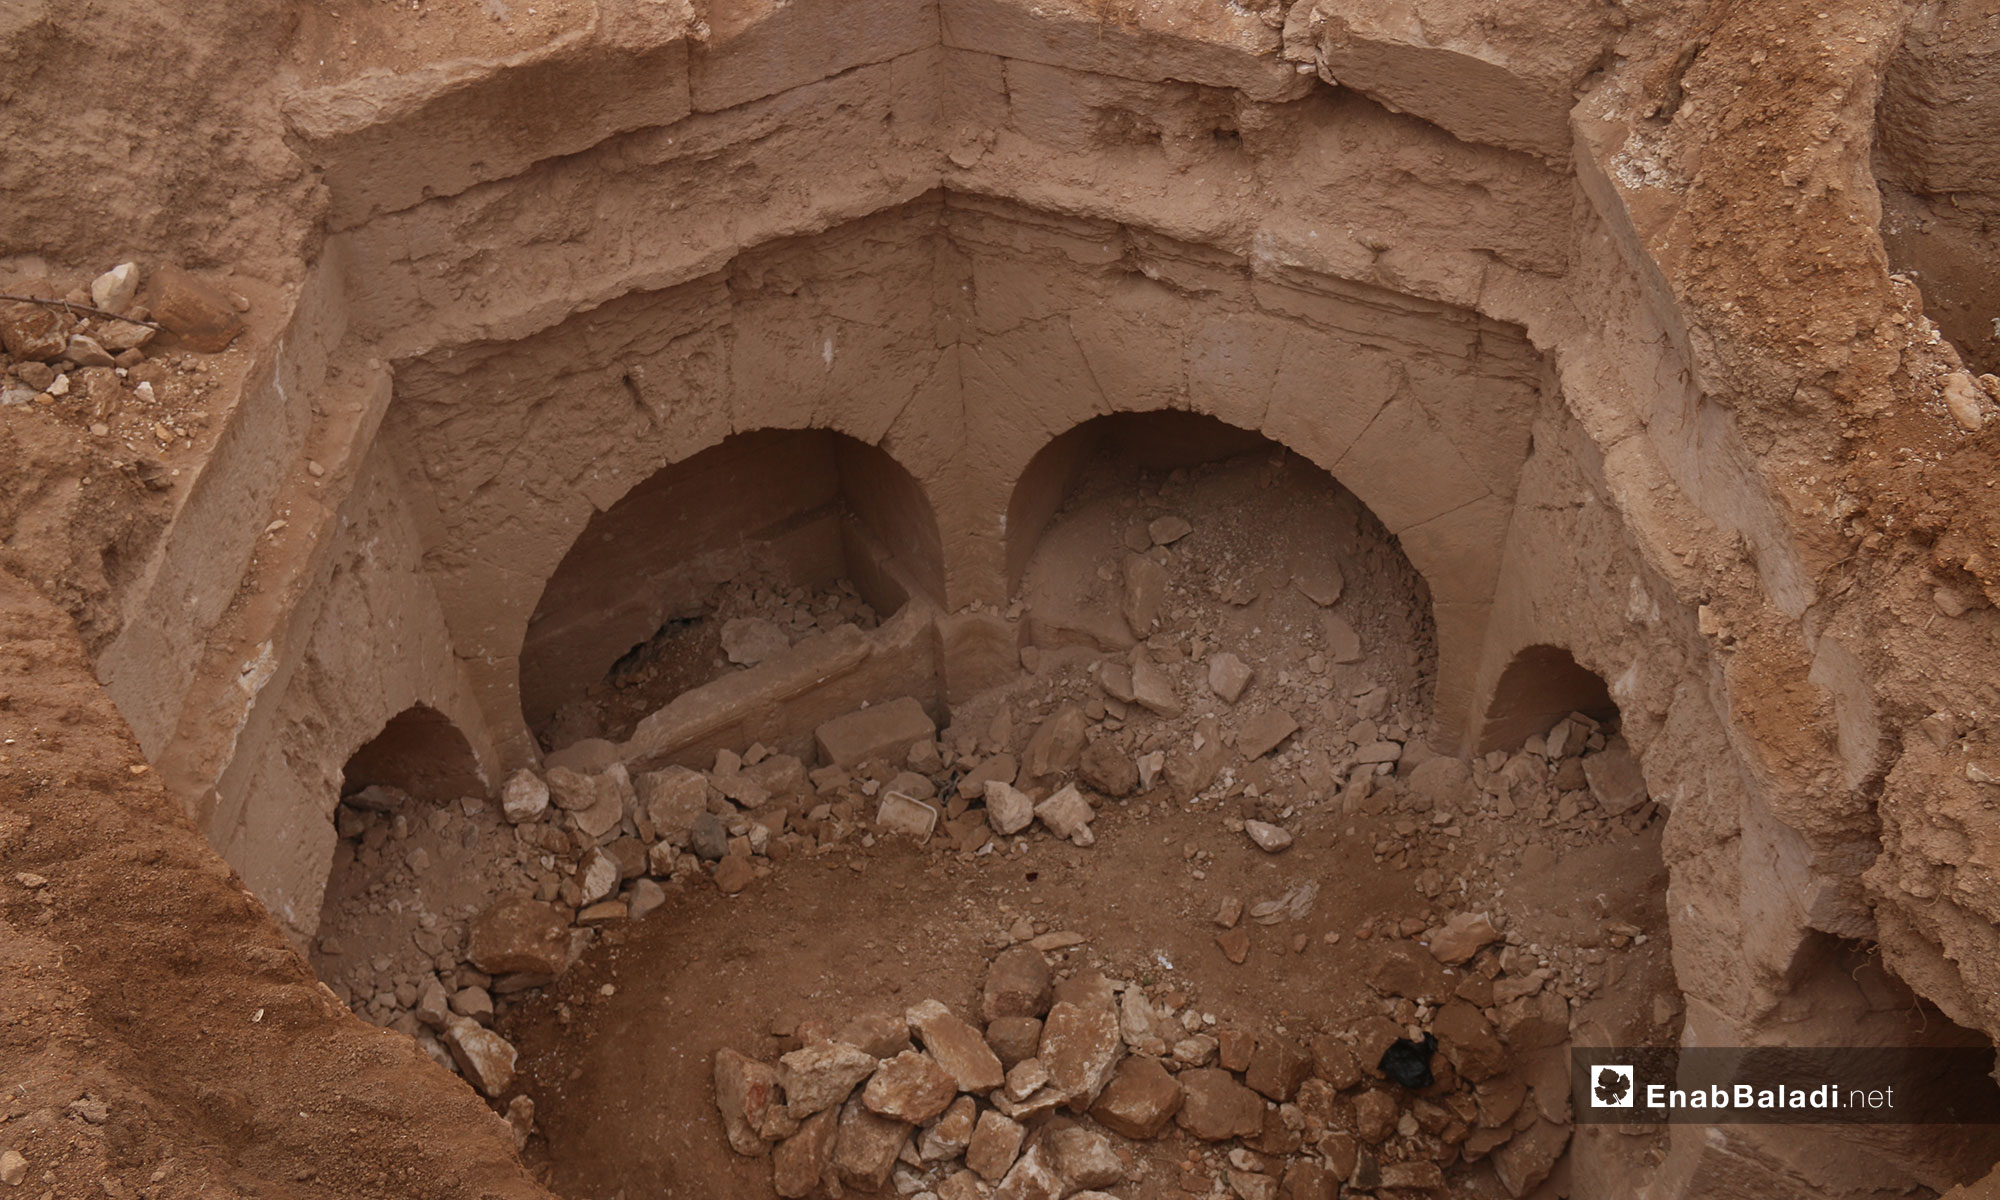 مقبرة تعود للعهد الروماني في بلدة جرجناز شرق معرة النعمان - 9 من تشرين الثاني 2018 (عنب بلدي)